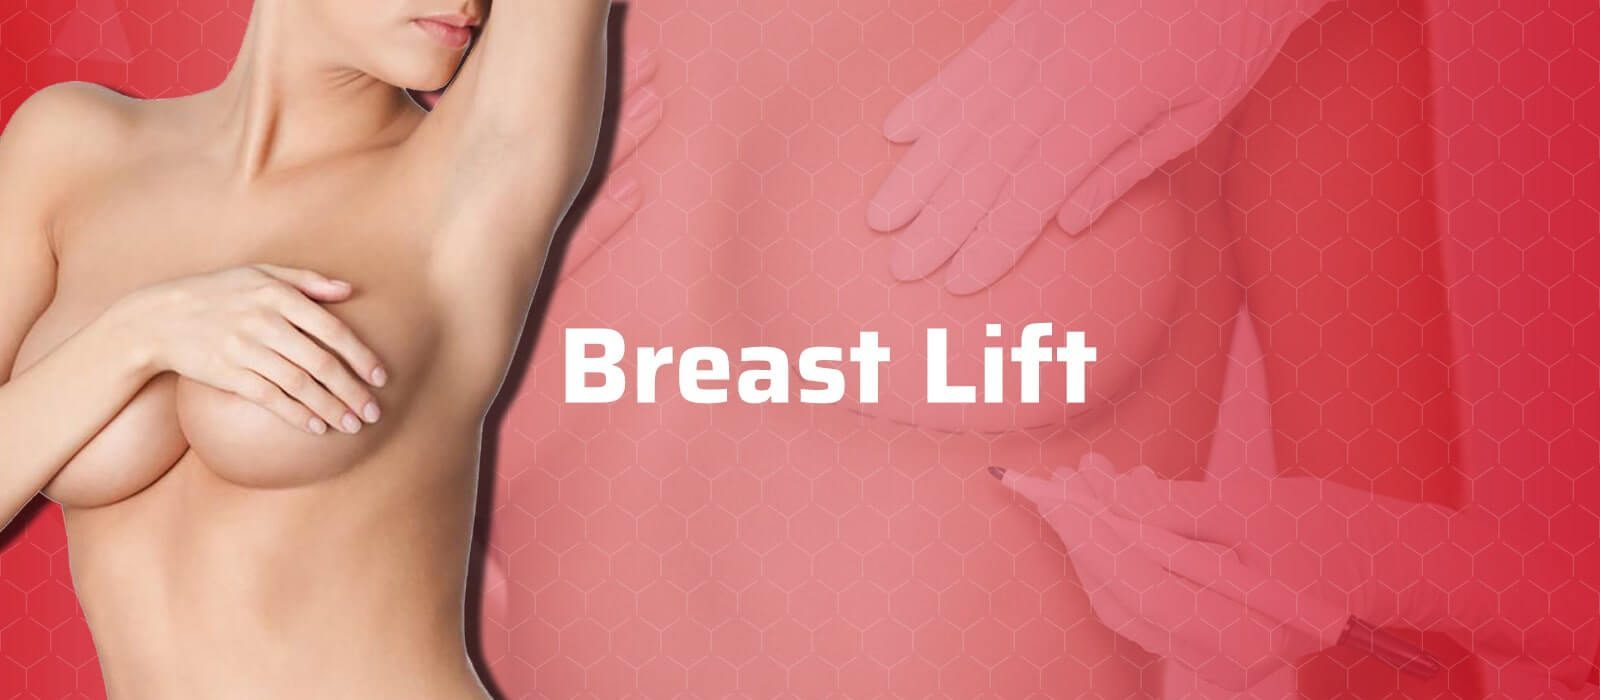 Breast-Lift-min